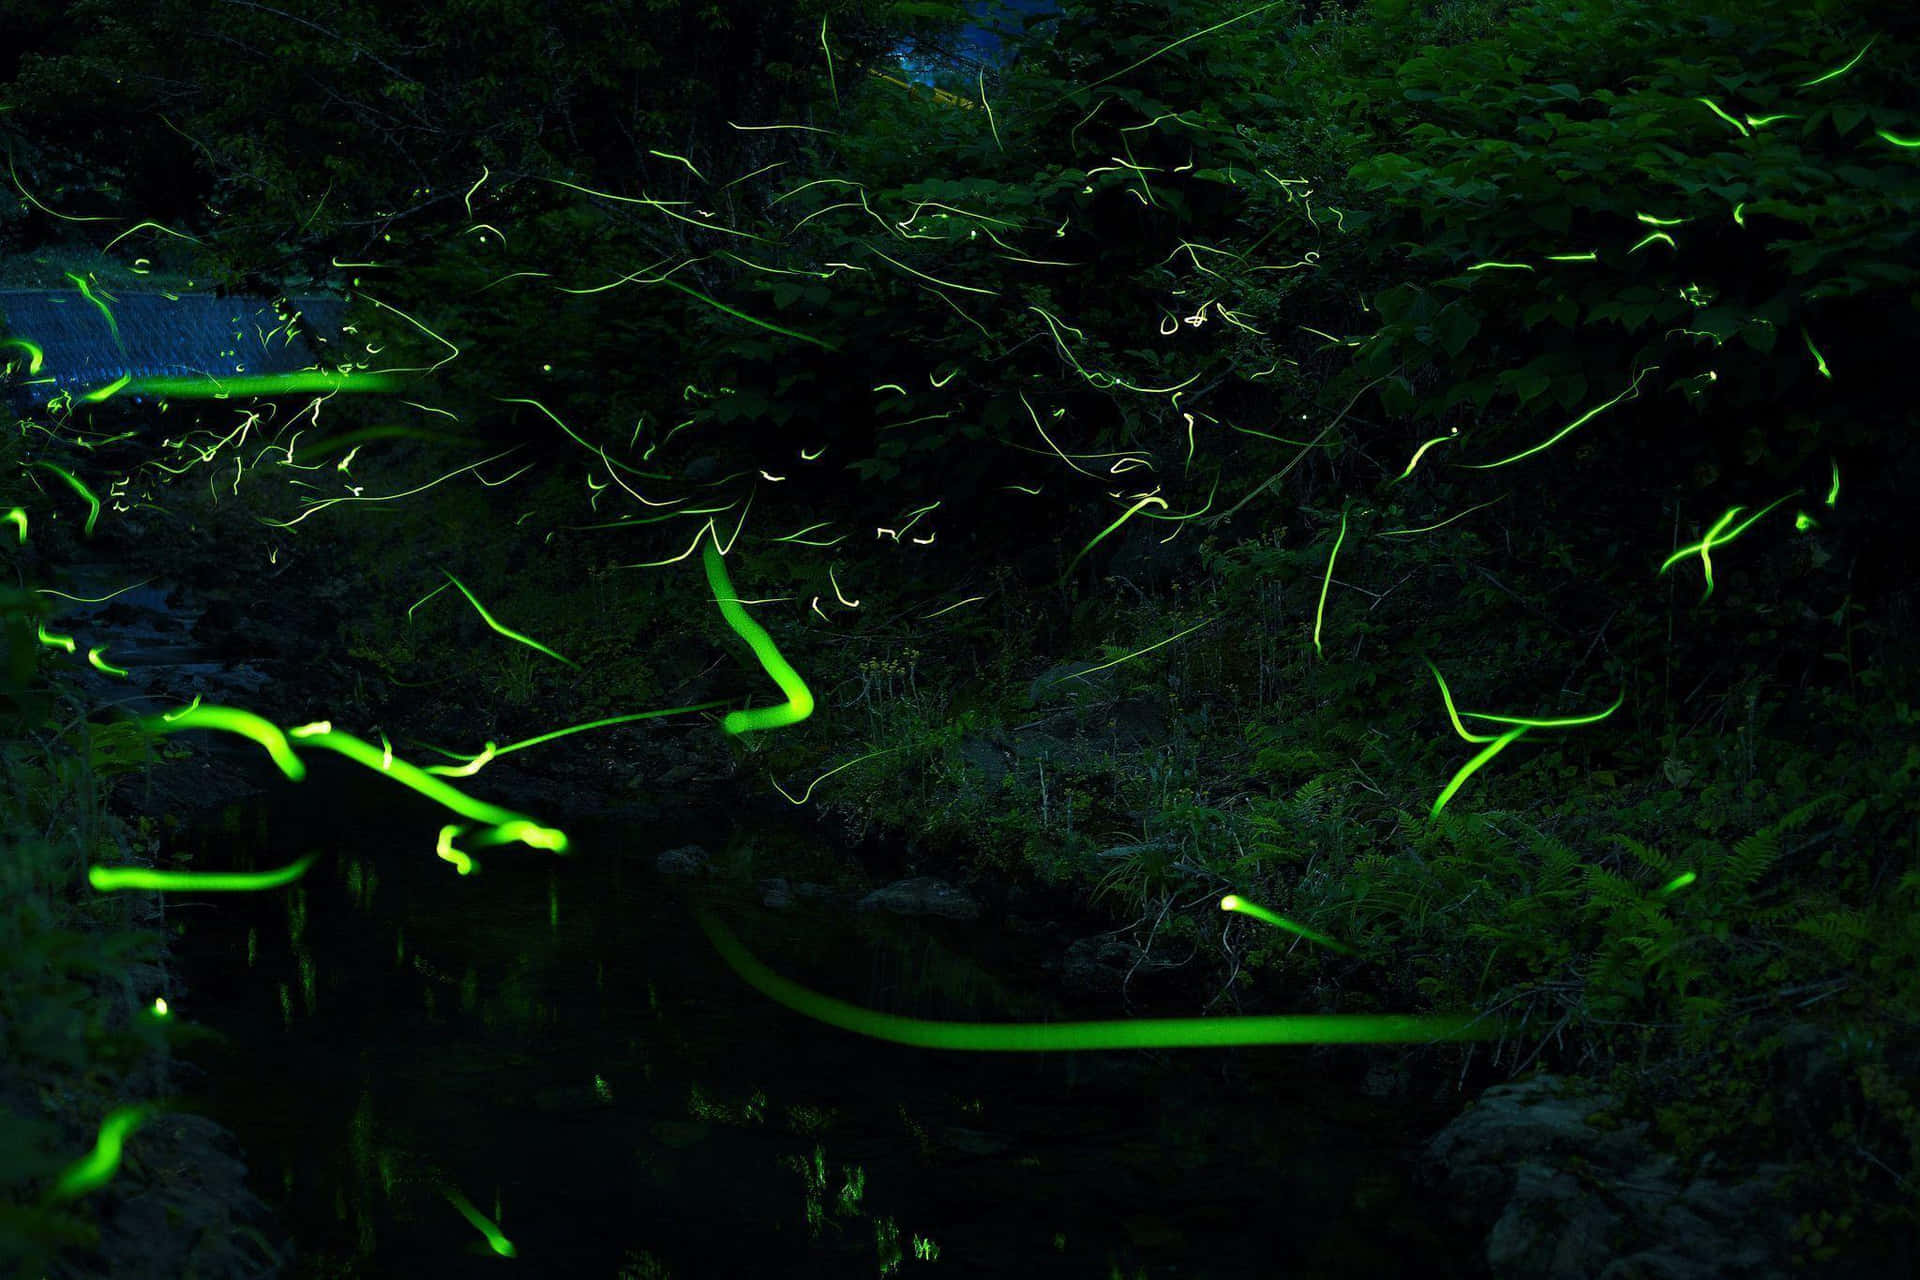 Firefly Hd On Grass Wallpaper